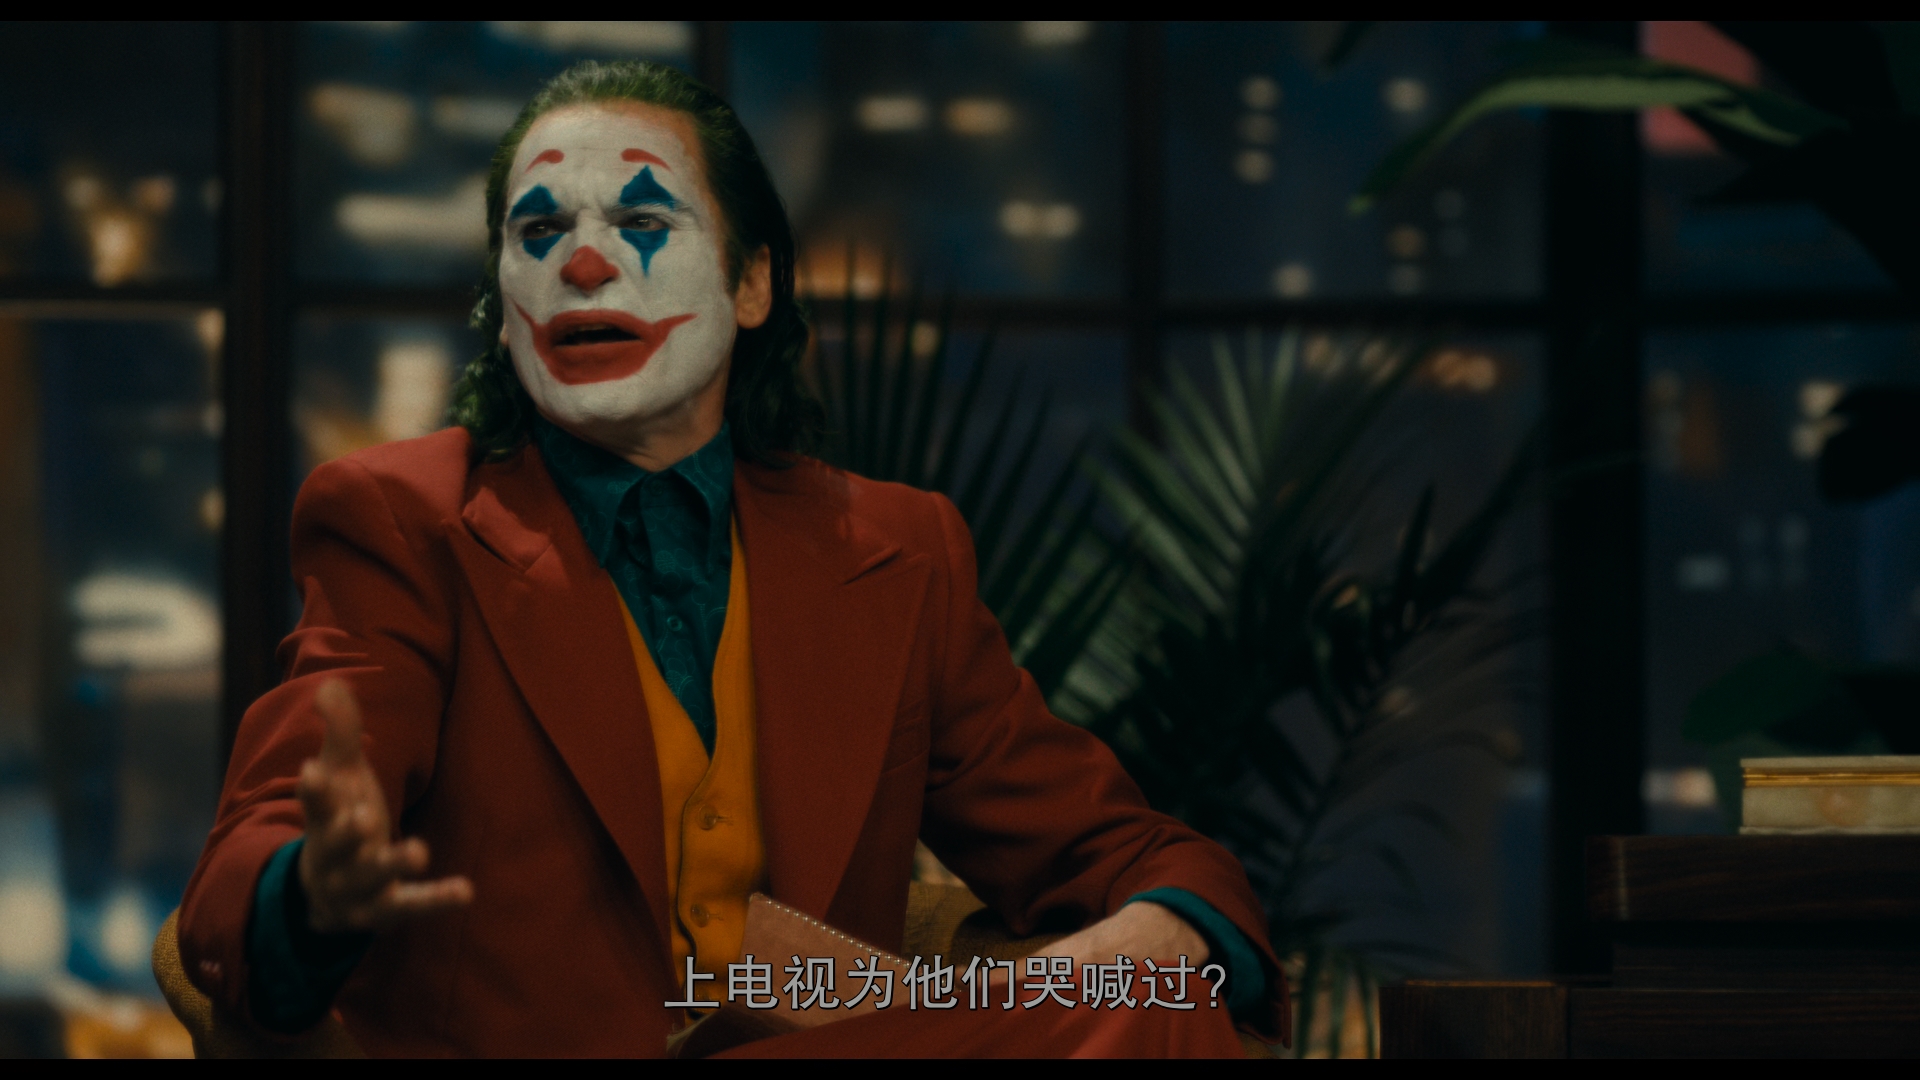 [小丑].Joker.2019.UHD.BluRay.2160p.HEVC.TrueHD.7.1-LKReborn@CHDBits      53.17G-9.jpg